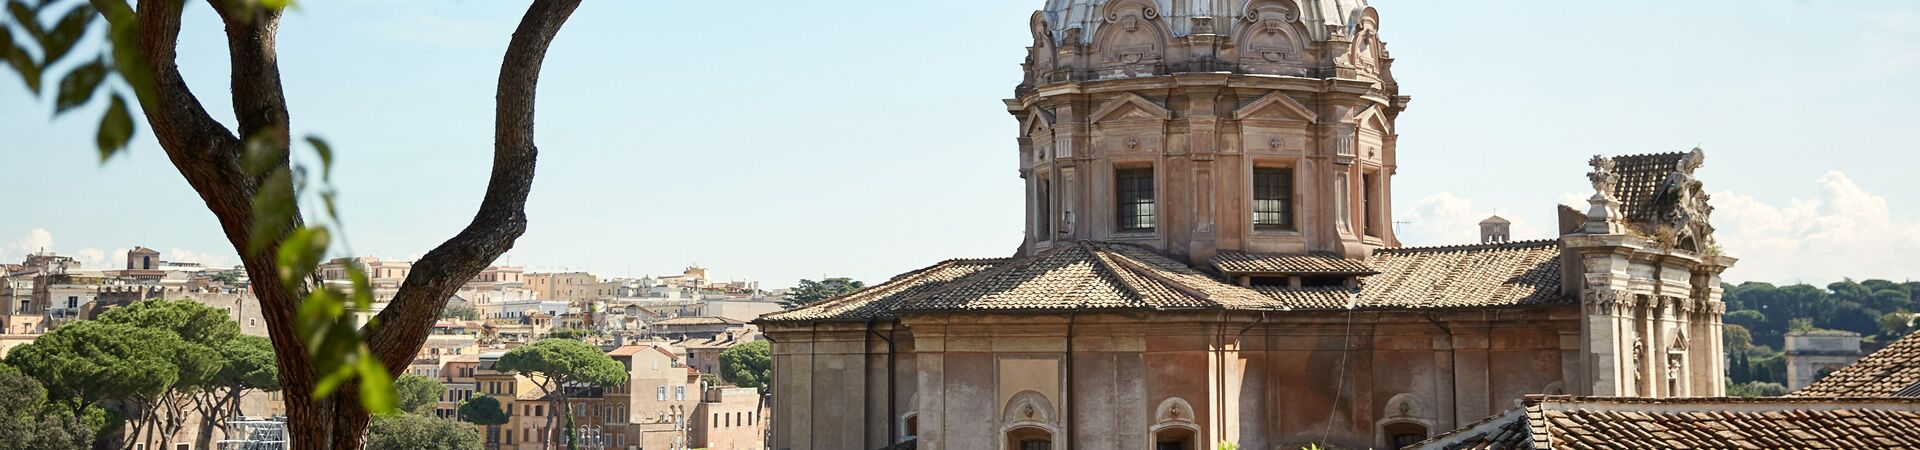 Graduate Shared Apartments | Housing | John Cabot University | Rome